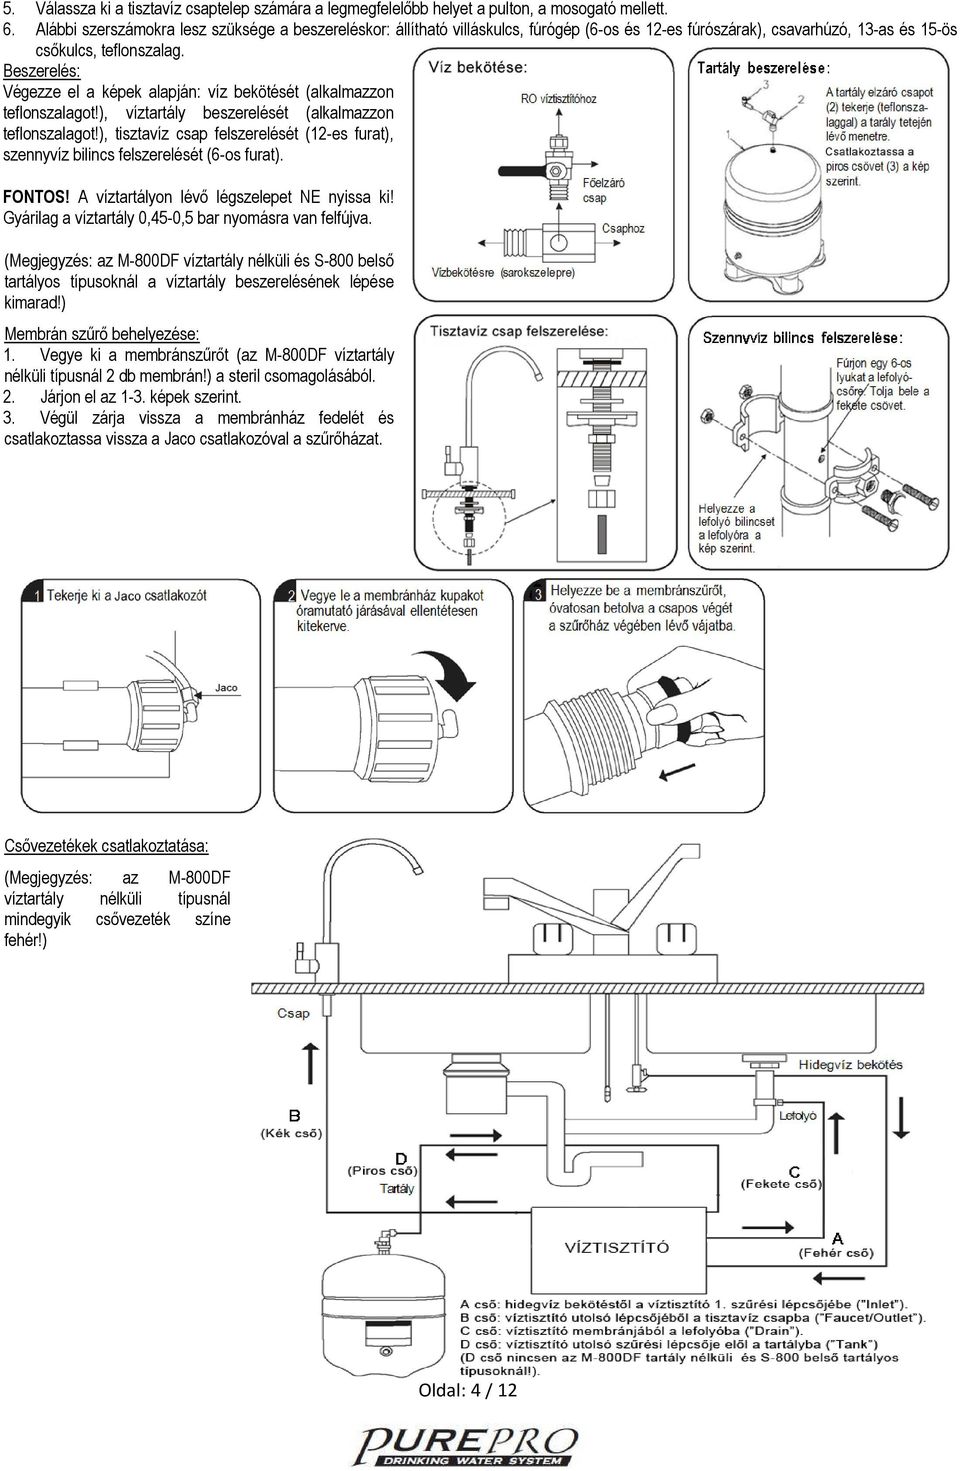 GÉPKÖNYV Beszerelési- és kezelési útmutató PurepPro fordított ozmózis (RO)  víztisztítók alábbi típusaihoz: - PDF Ingyenes letöltés